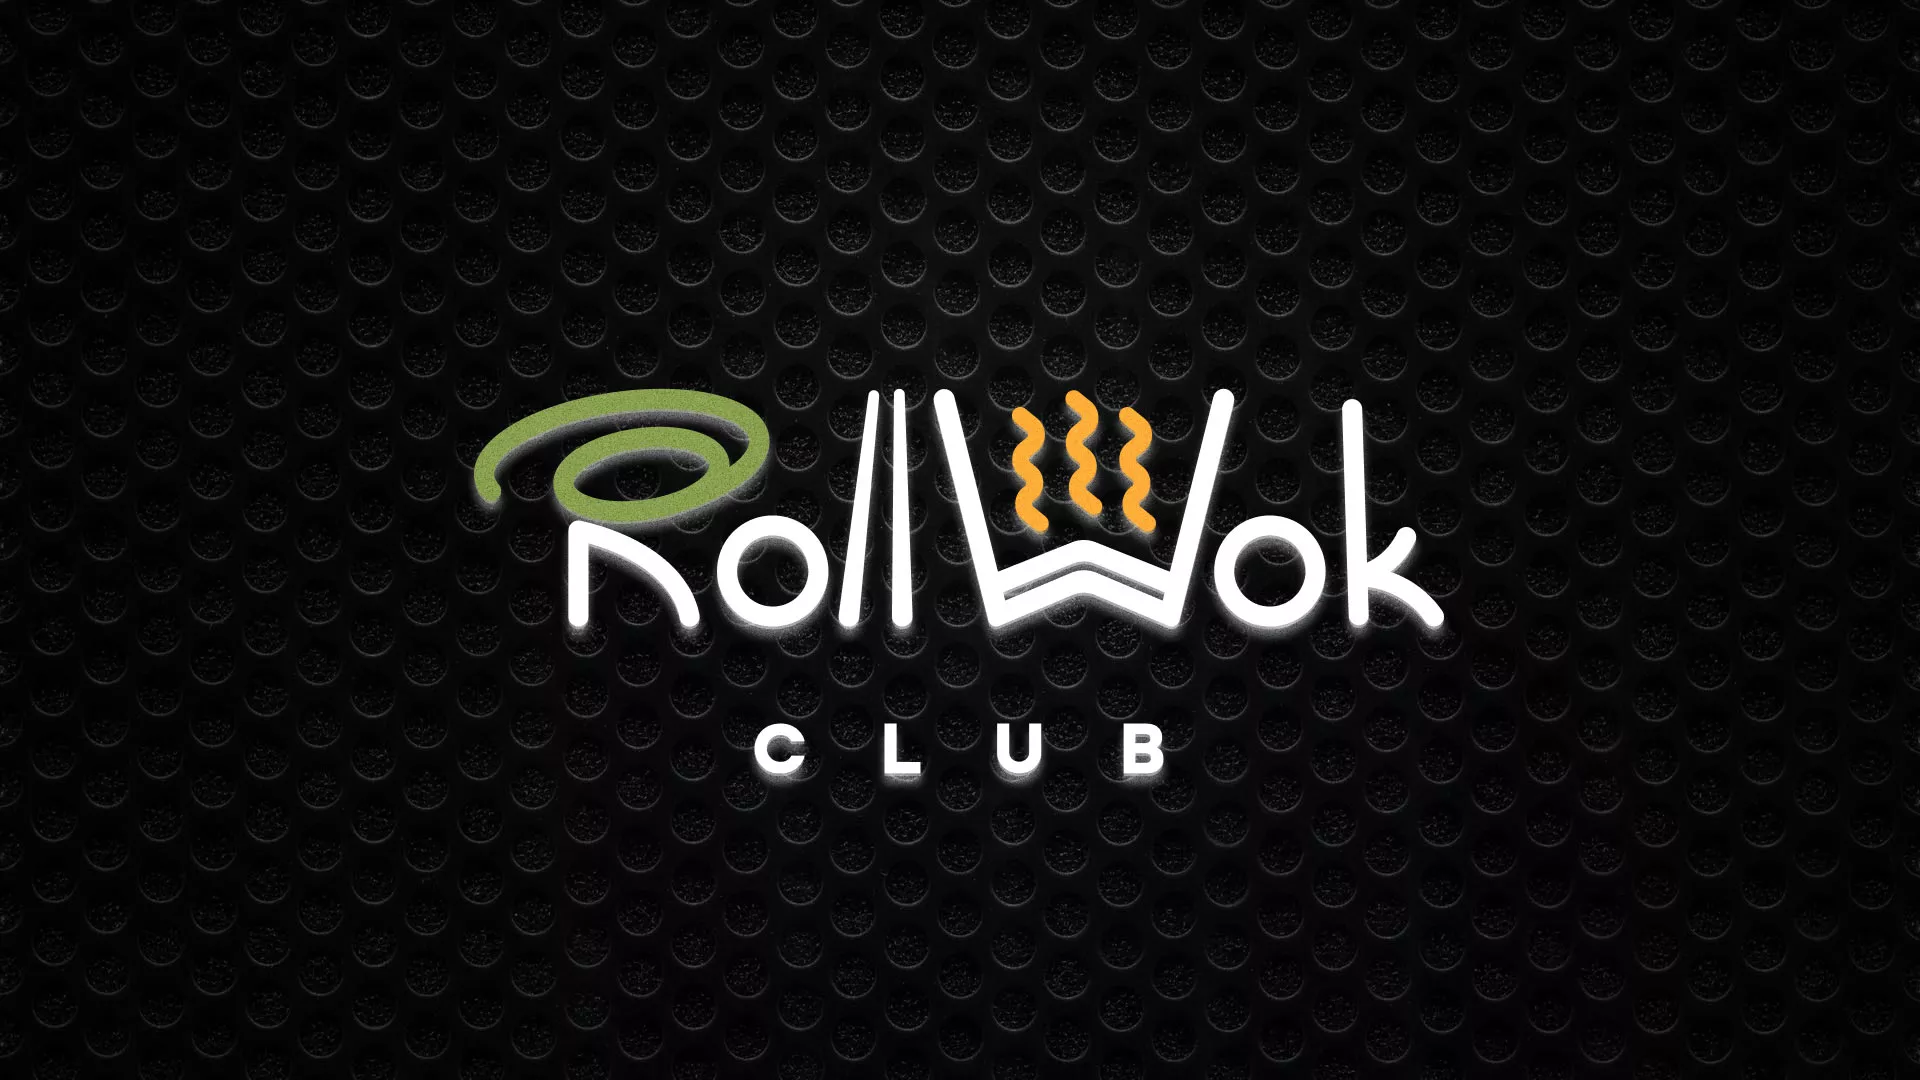 Брендирование торговых точек суши-бара «Roll Wok Club» в Красноярске